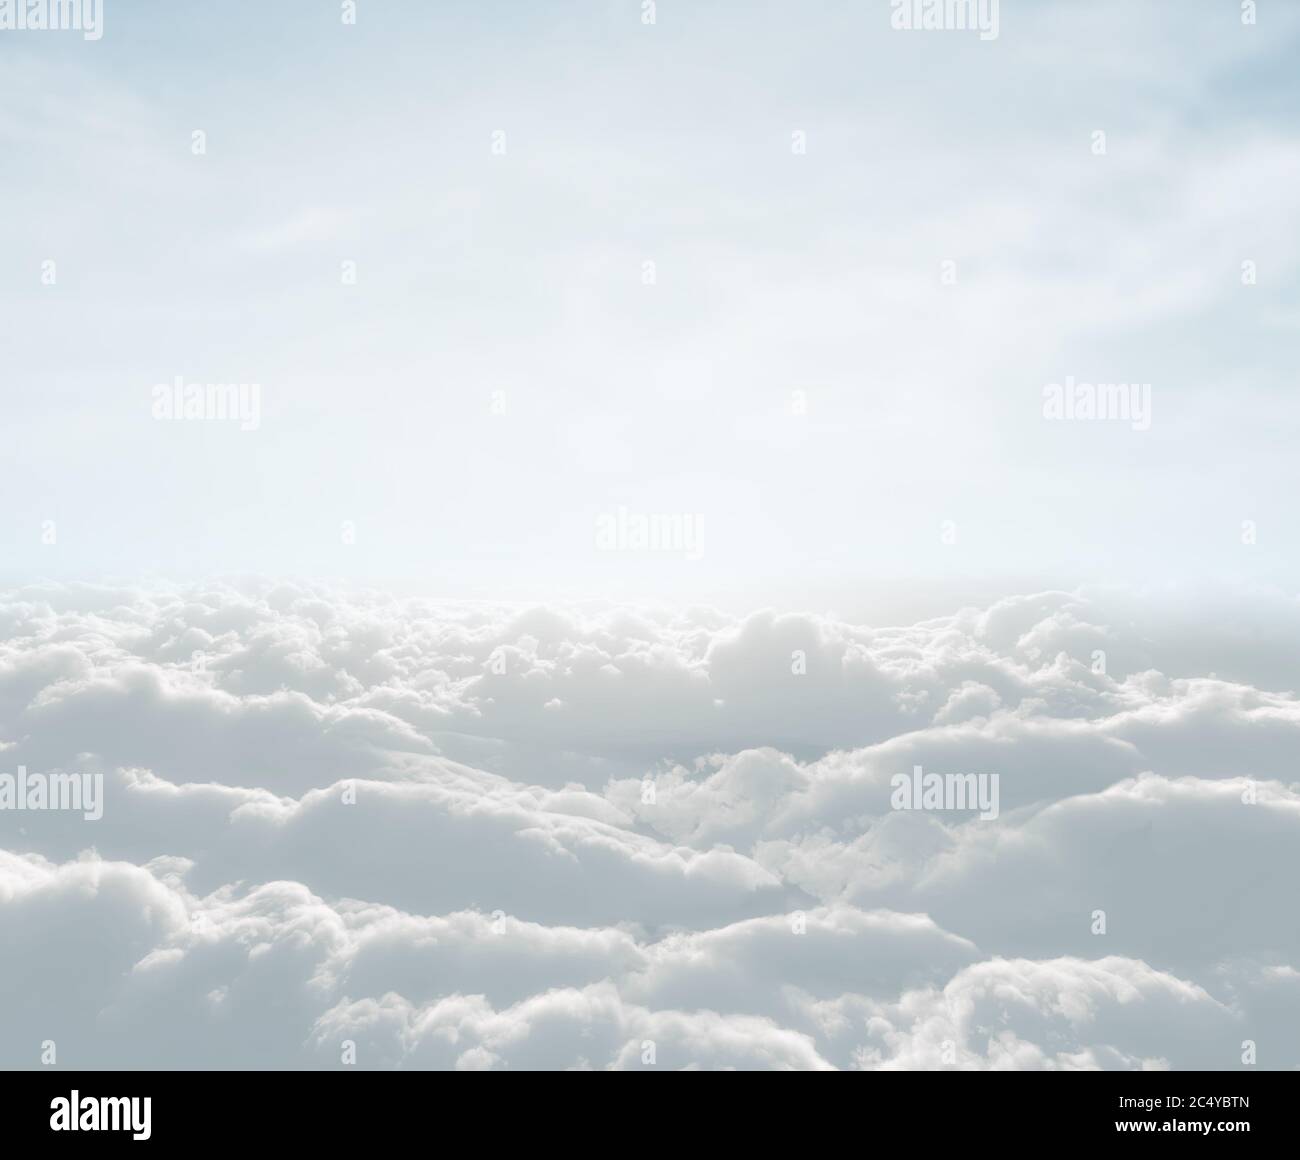 gratte-ciel haute définition avec nuages et lumière du jour Banque D'Images